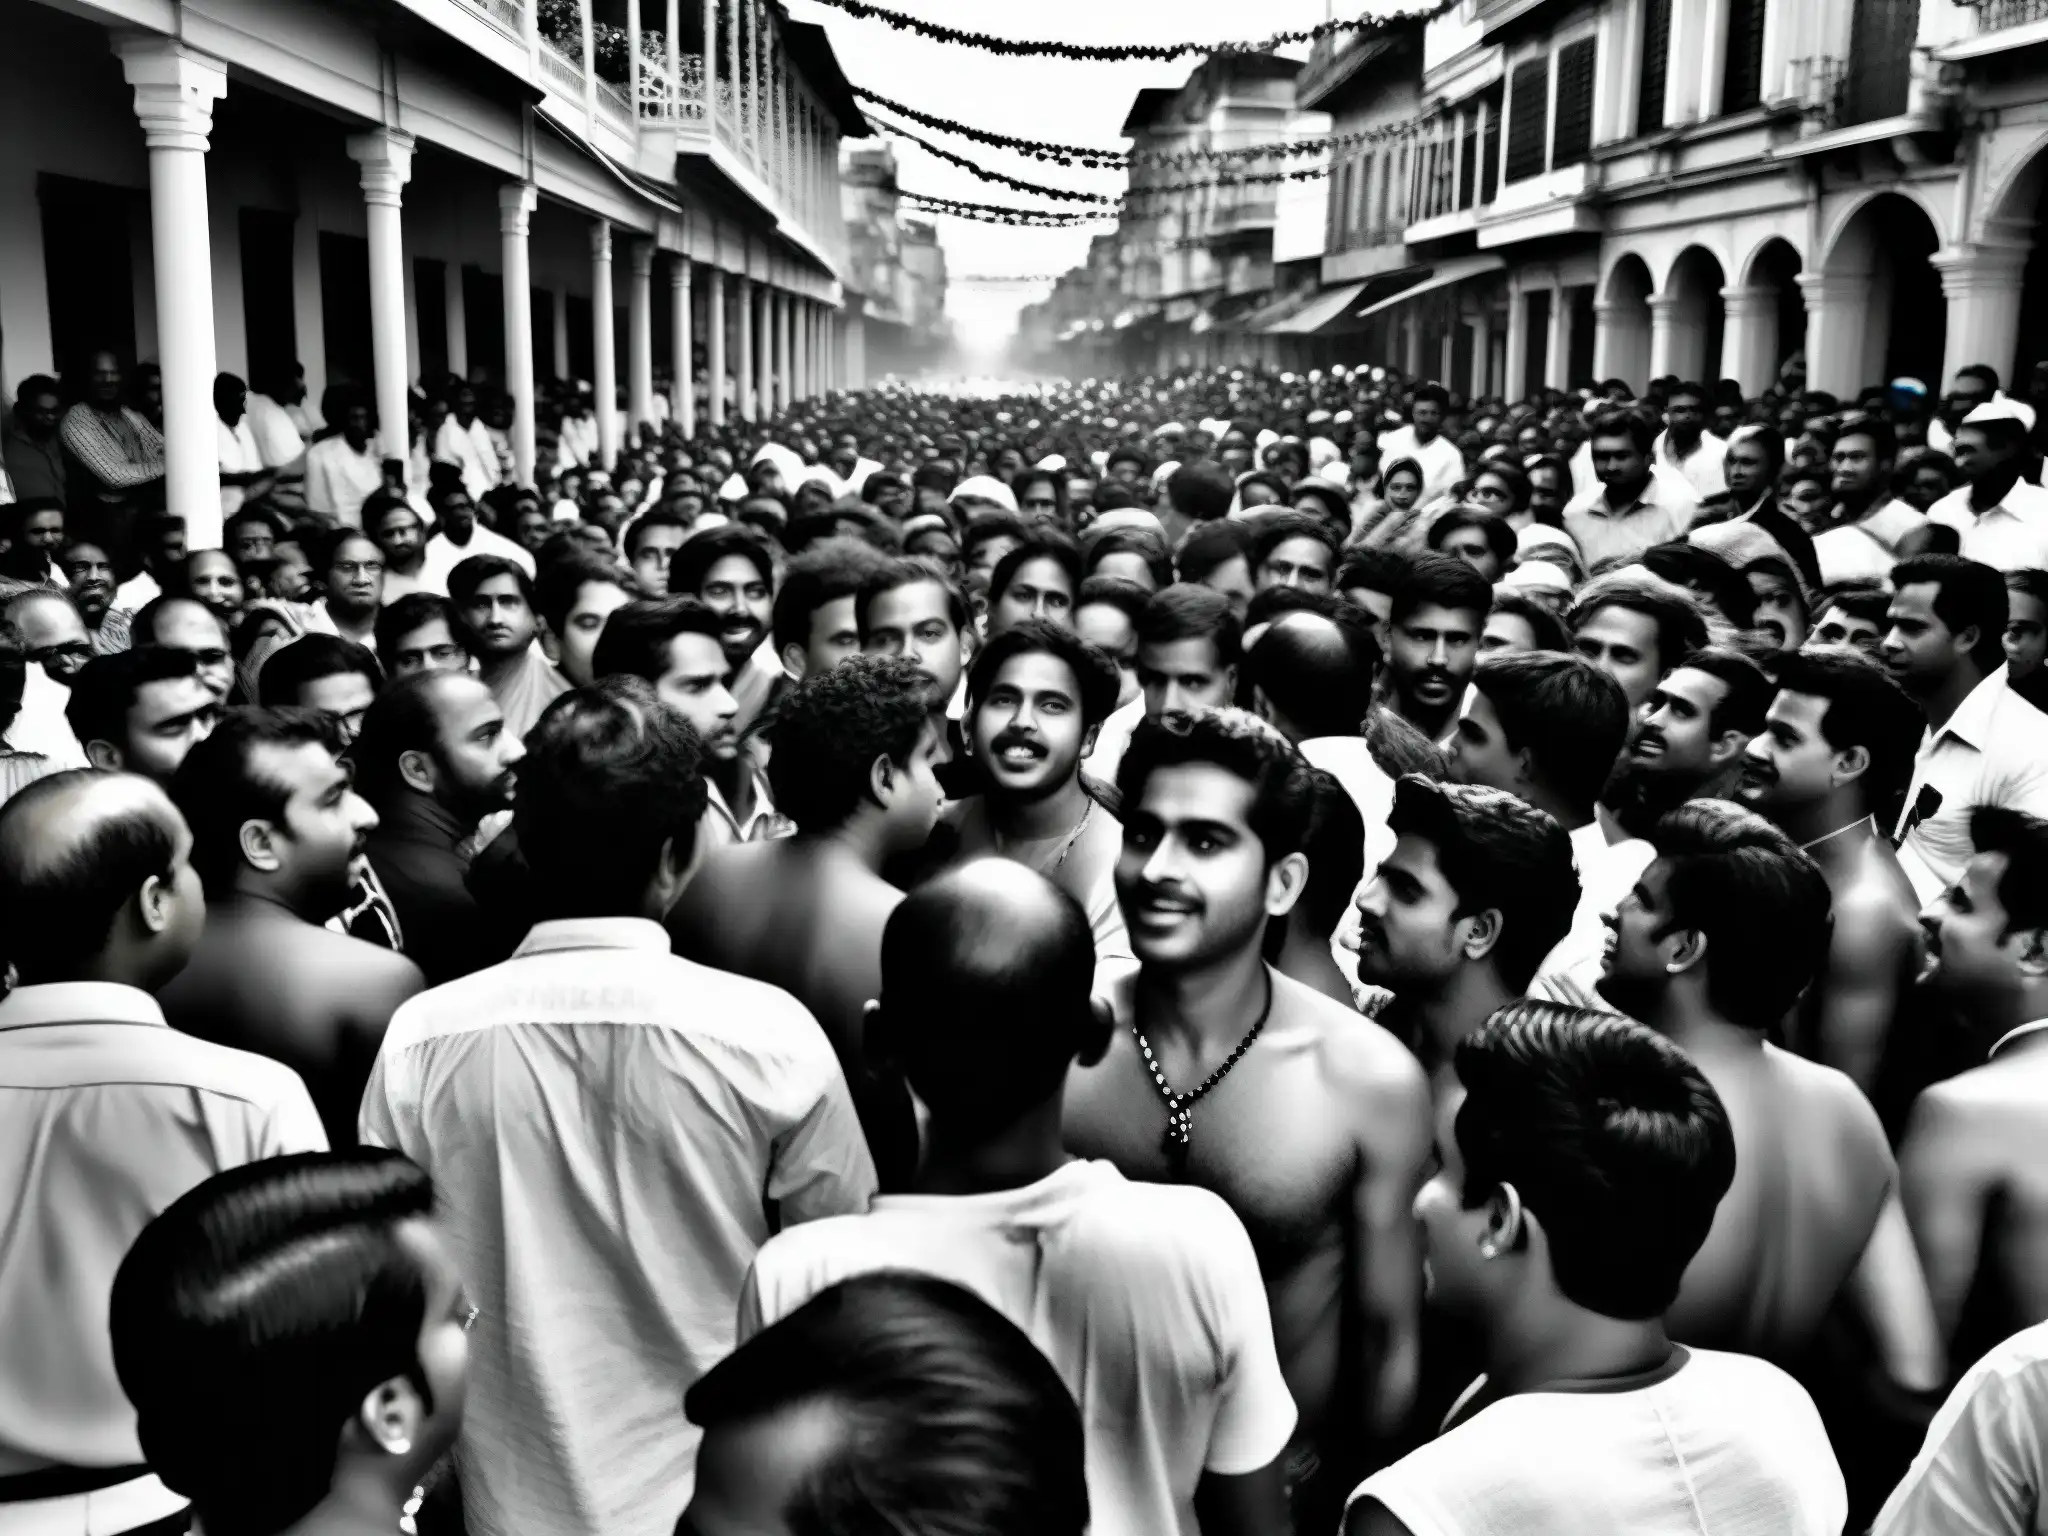 Imagen en blanco y negro de un bullicioso culto a la diosa Kali en las calles de Calcuta, con devotos danzando frenéticamente entre templos antiguos